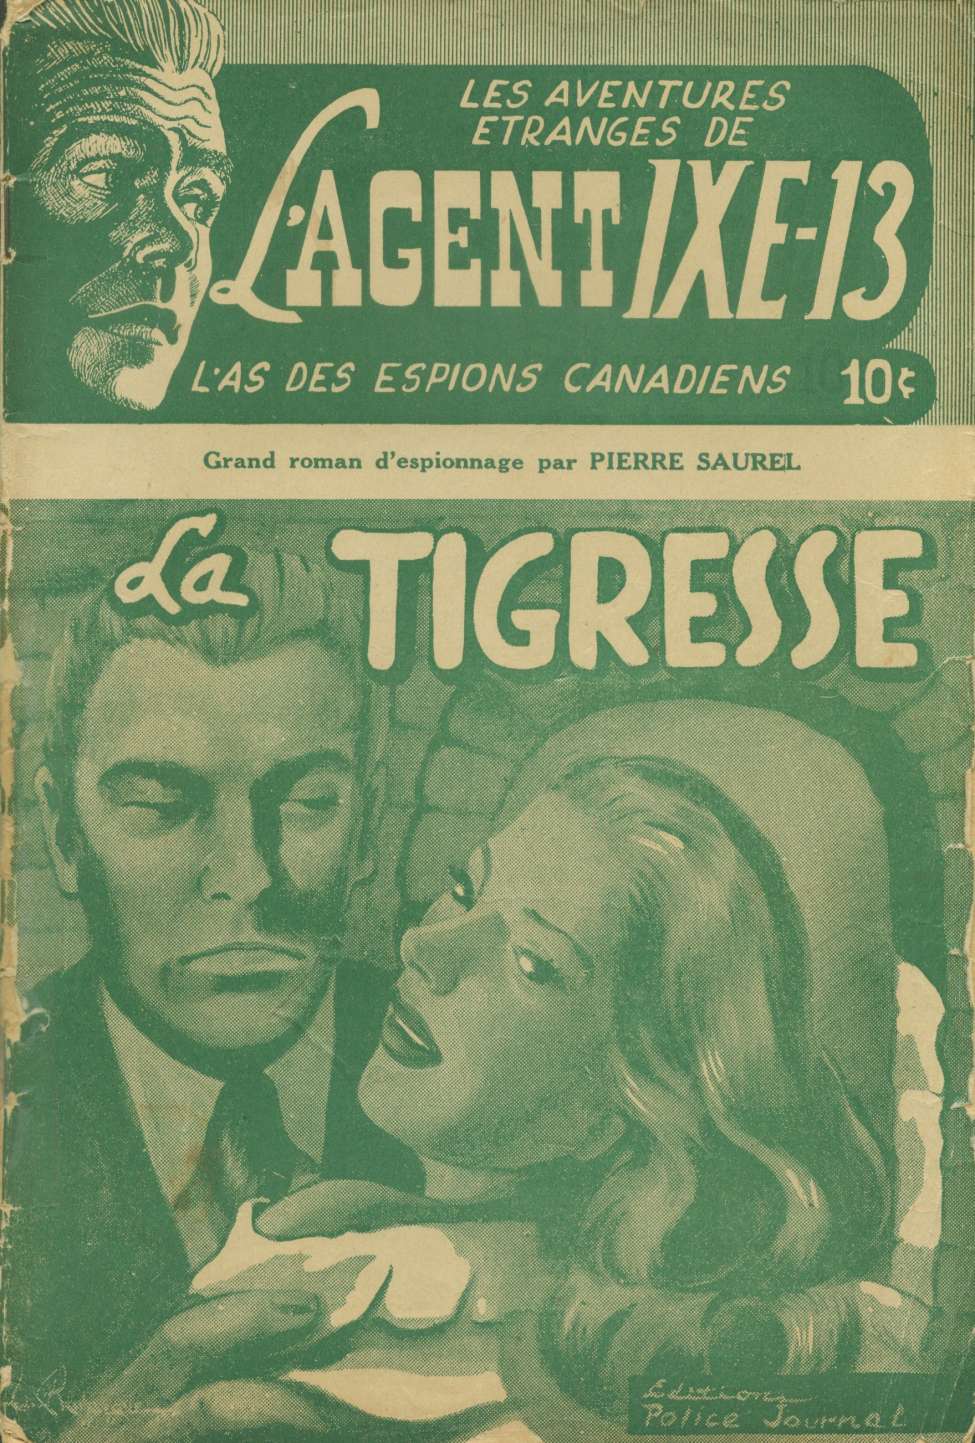 Comic Book Cover For L'Agent IXE-13 v1 2 - La tigresse